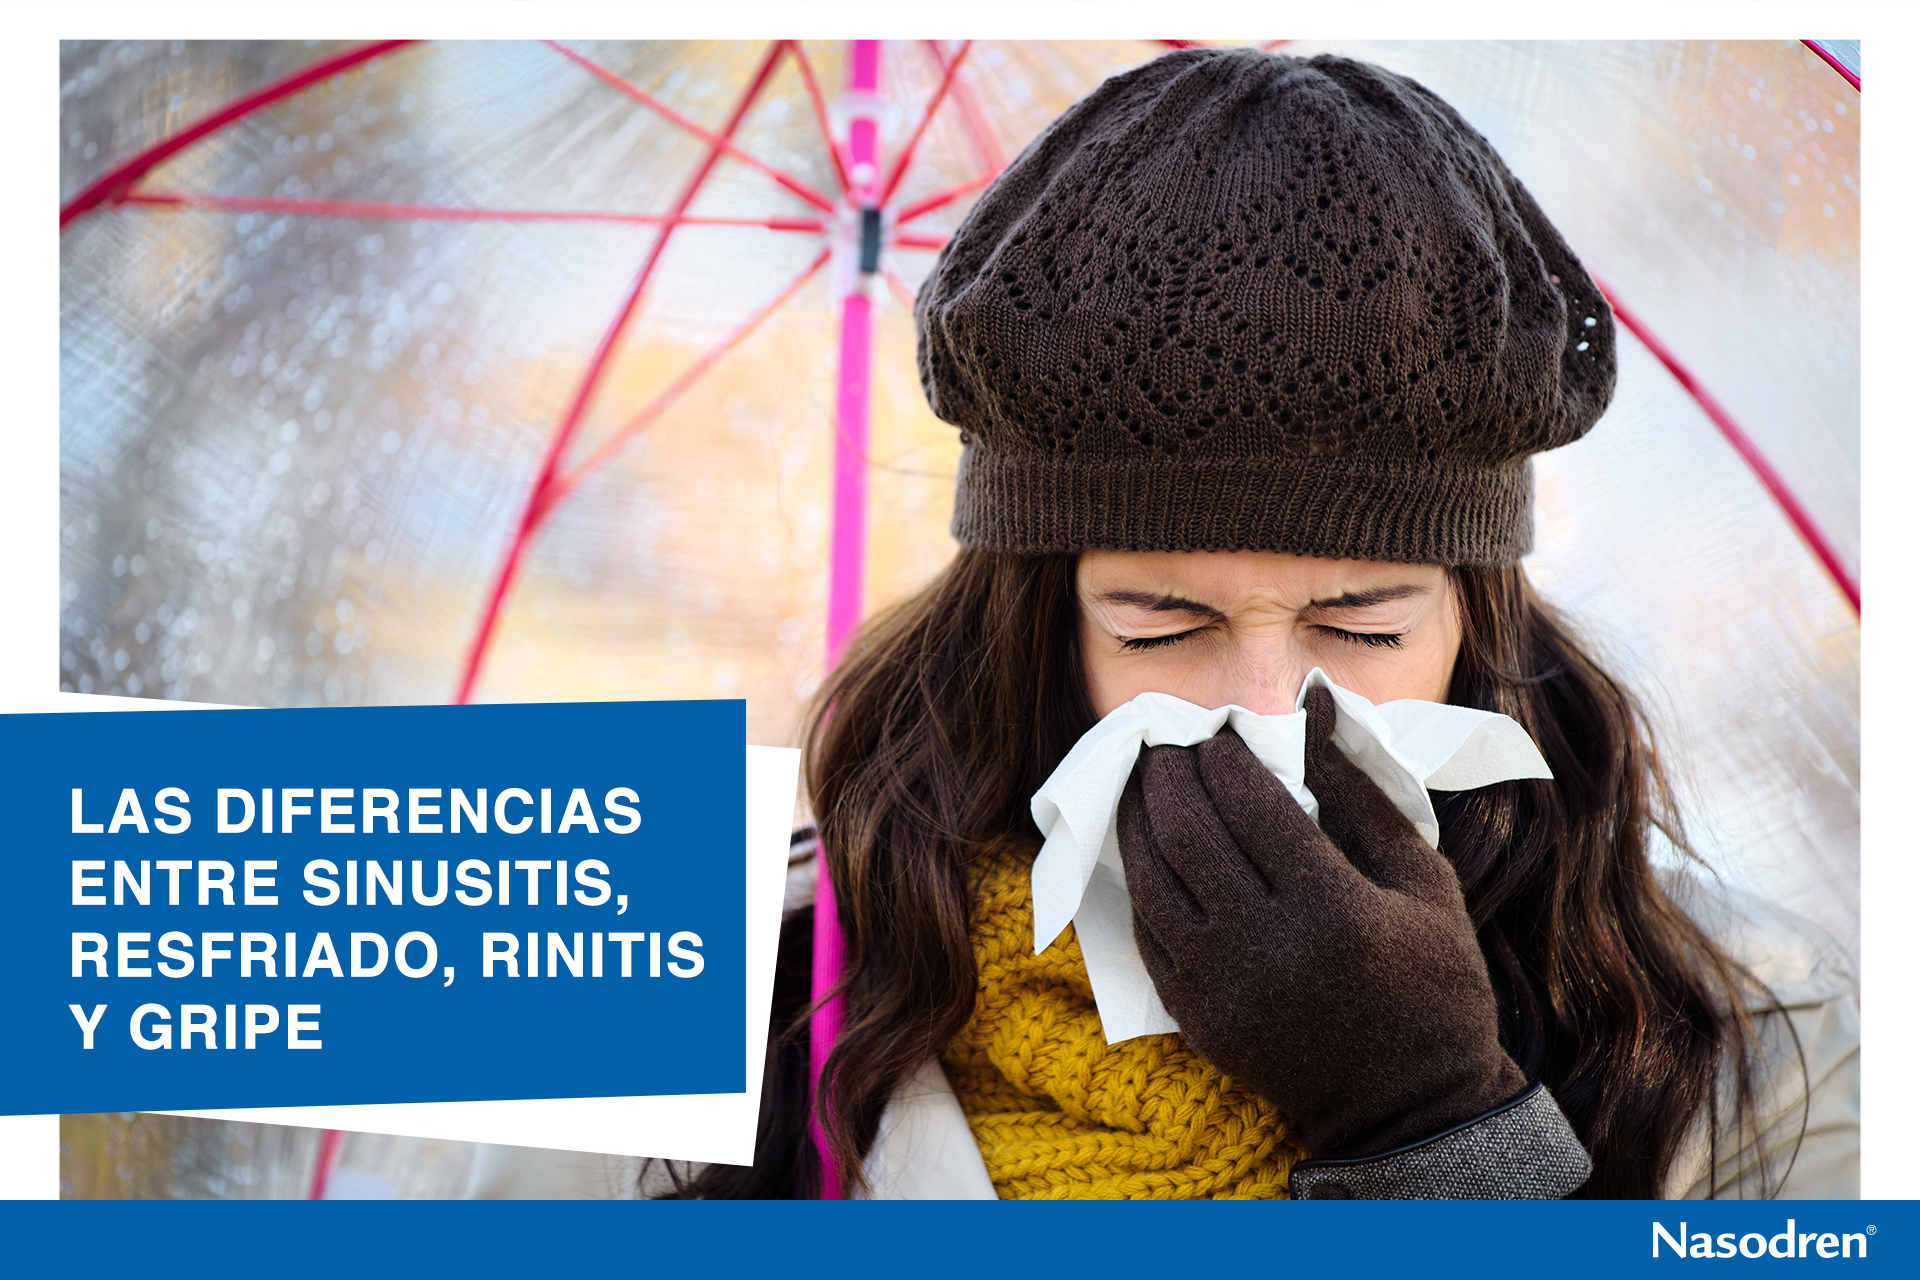 Las Diferencias entre Sinusitis, Resfriado, Rinitis y Gripe